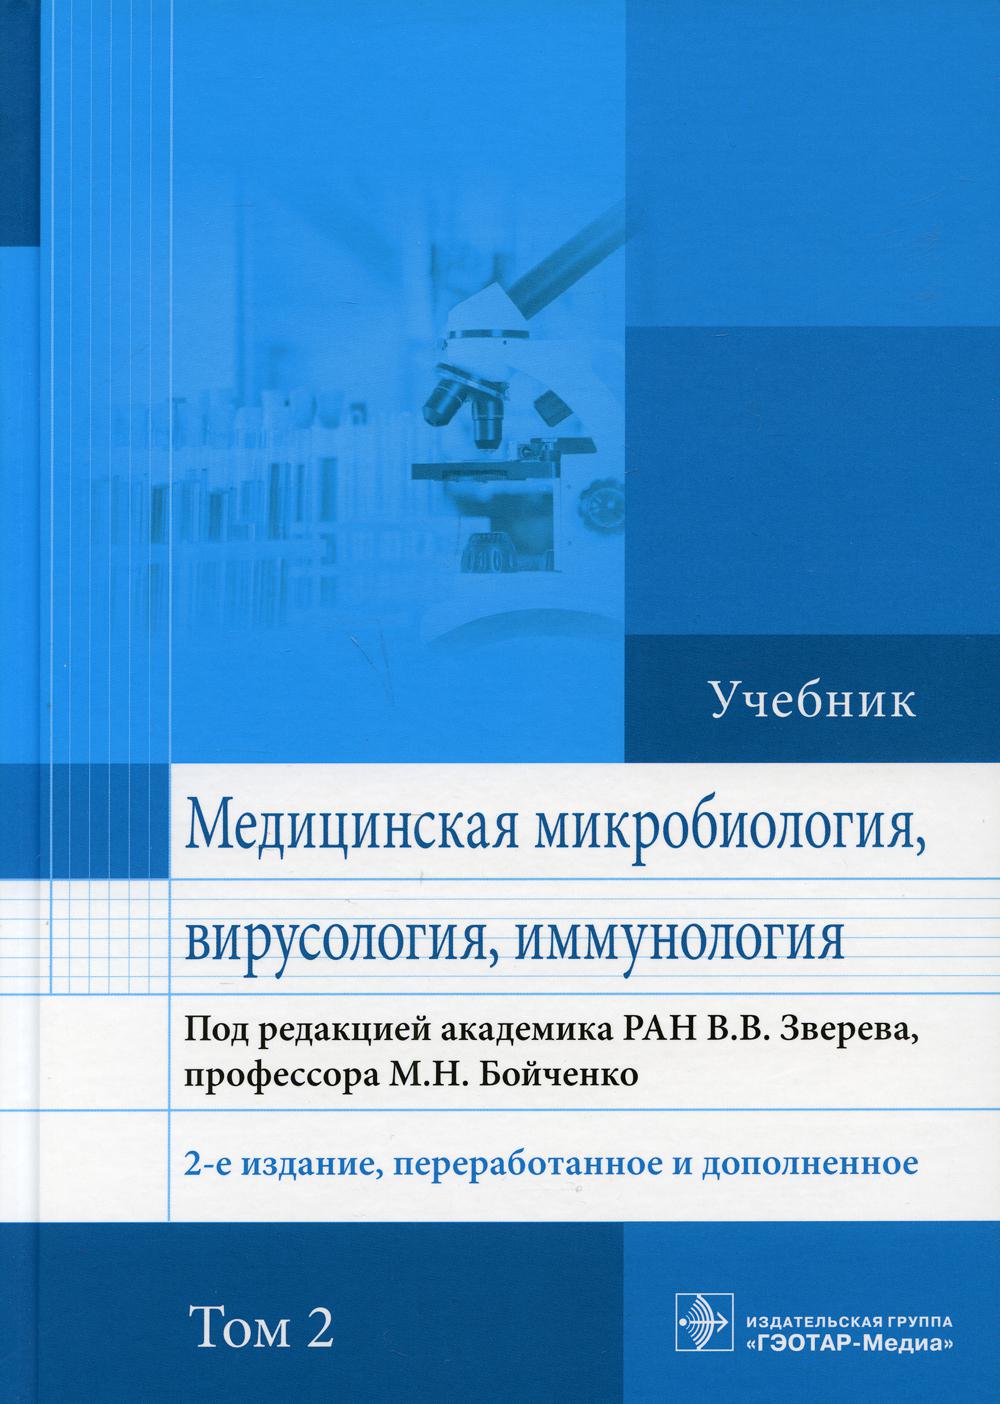 Медицинская микробиология, вирусология и иммунология: учебник. В 2 т. Т. 2. 2-е изд., перераб. и доп